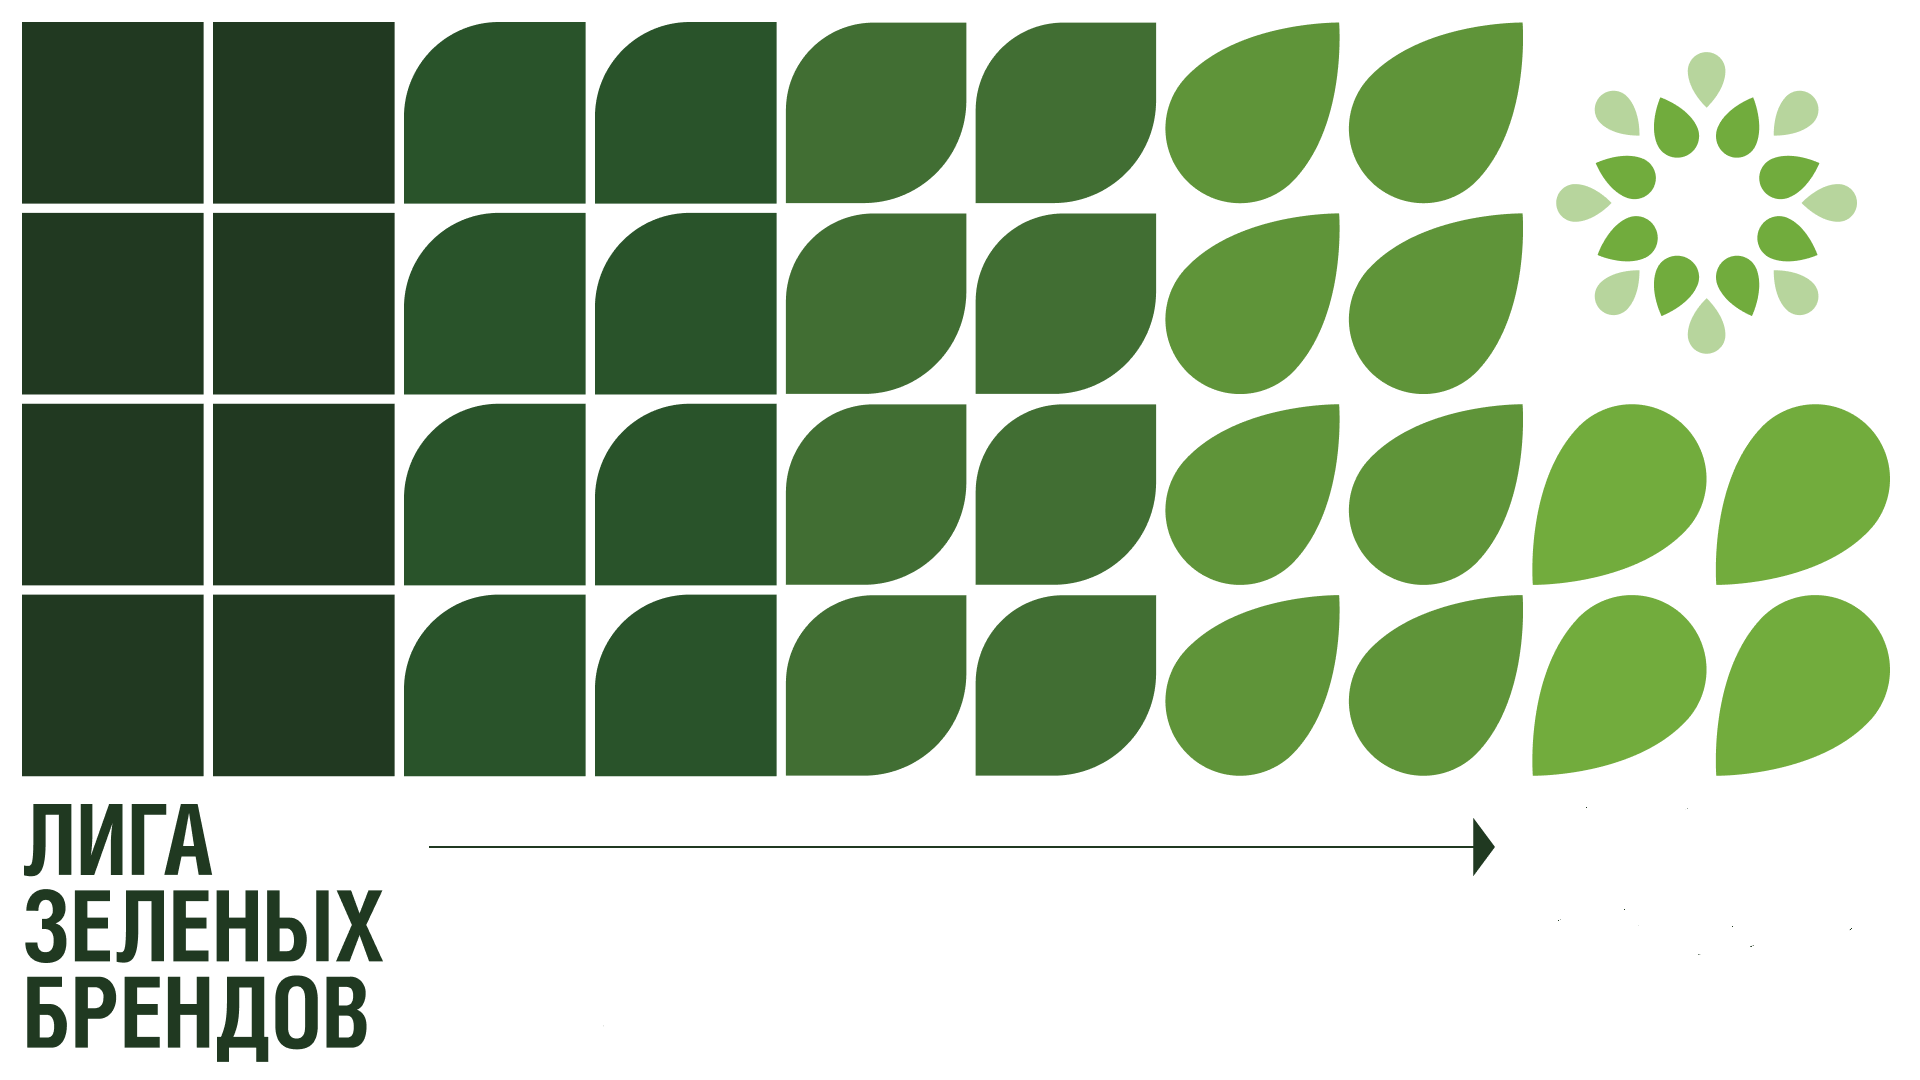 Лига Зеленых Брендов представила первый ренкинг устойчивых компаний  - фото 1